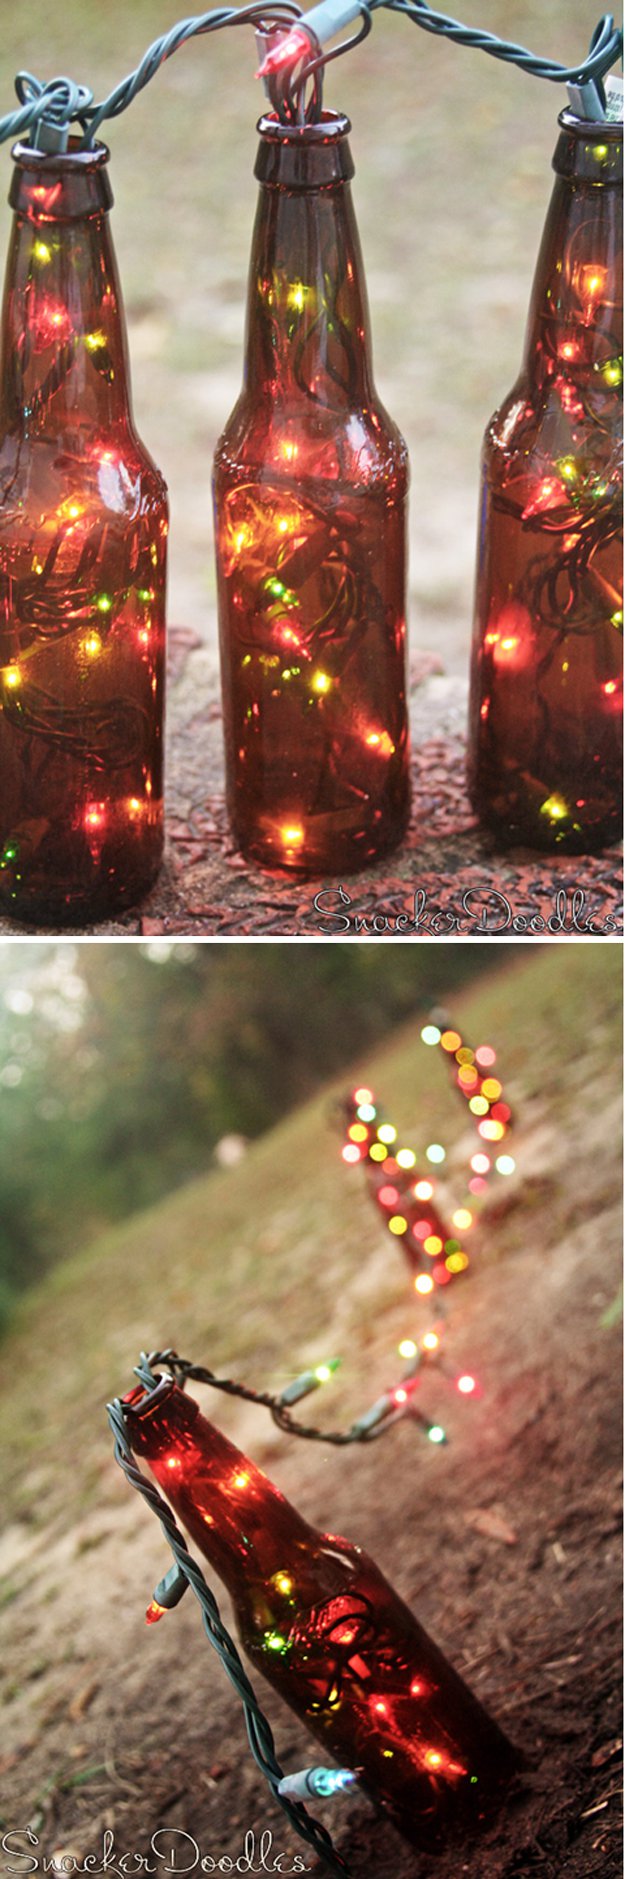 DIY Beer Bottle Light Crafts | www.diyready.com/diy-projects-uses-for-beer-bottles/